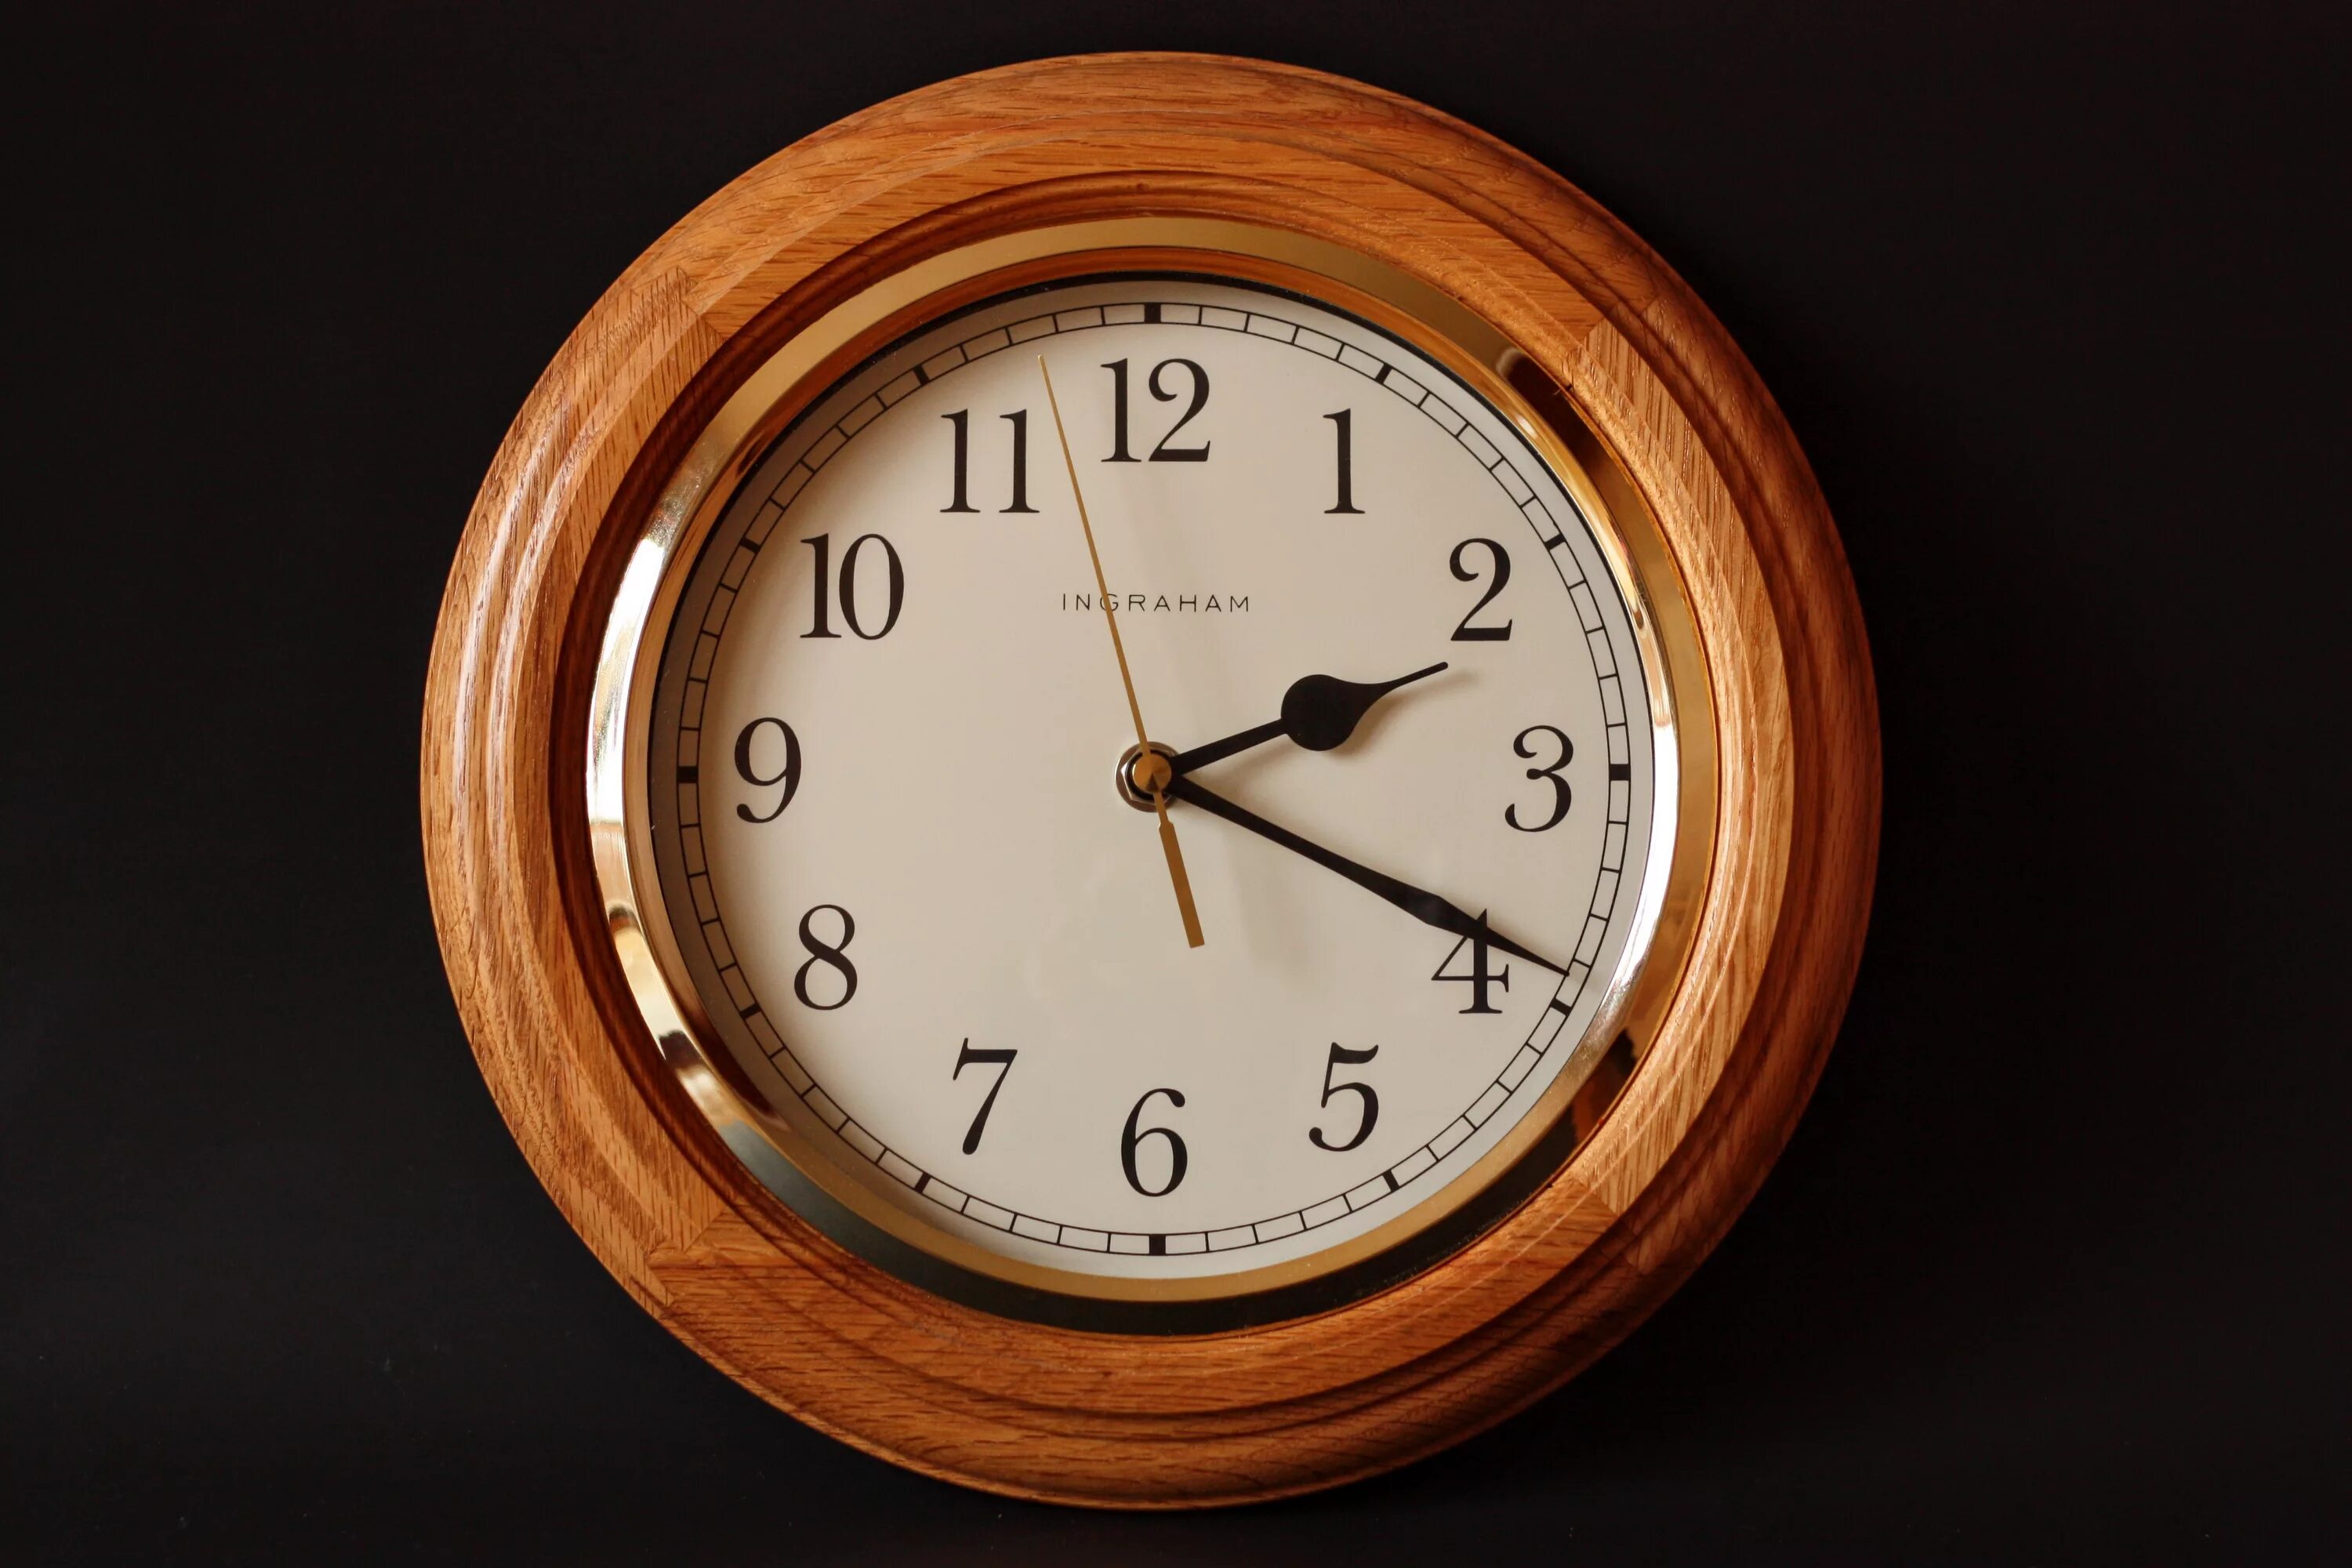 Westminster Chime часы Quartz. Часы механические настенные. Часы настенные деревянные. Часы классика. Время 14 39